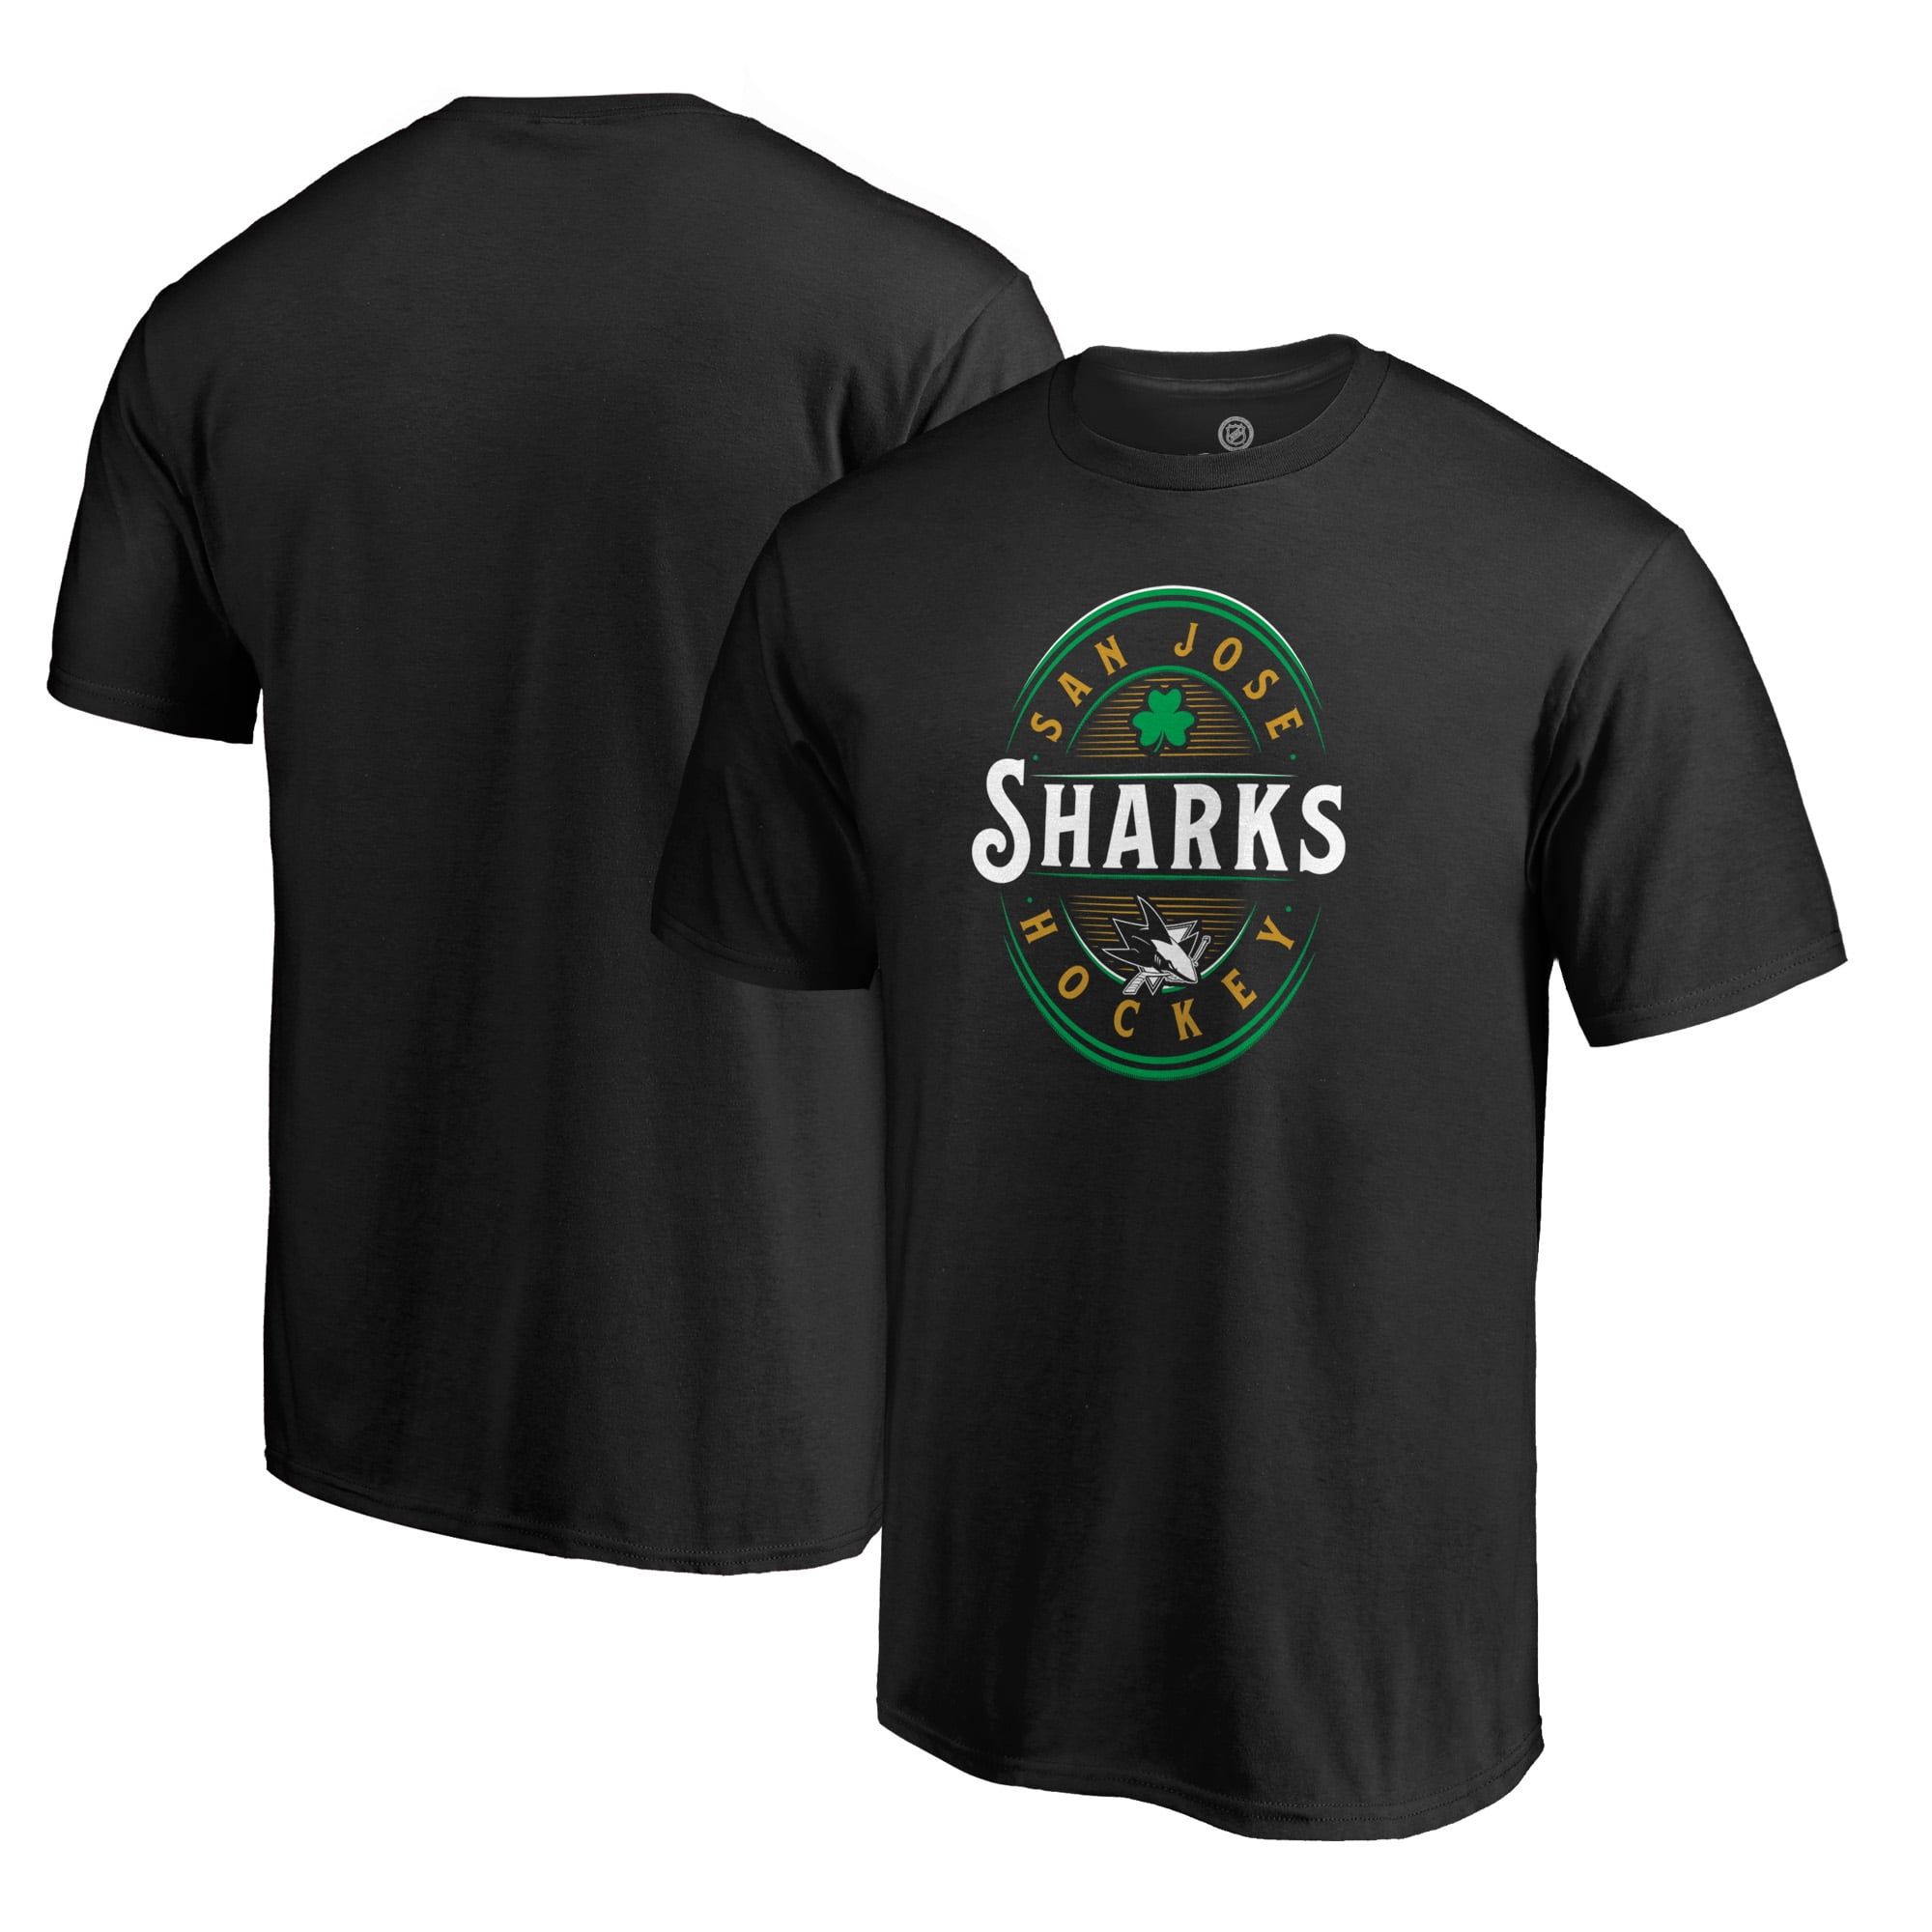 sharks st patrick's day jersey